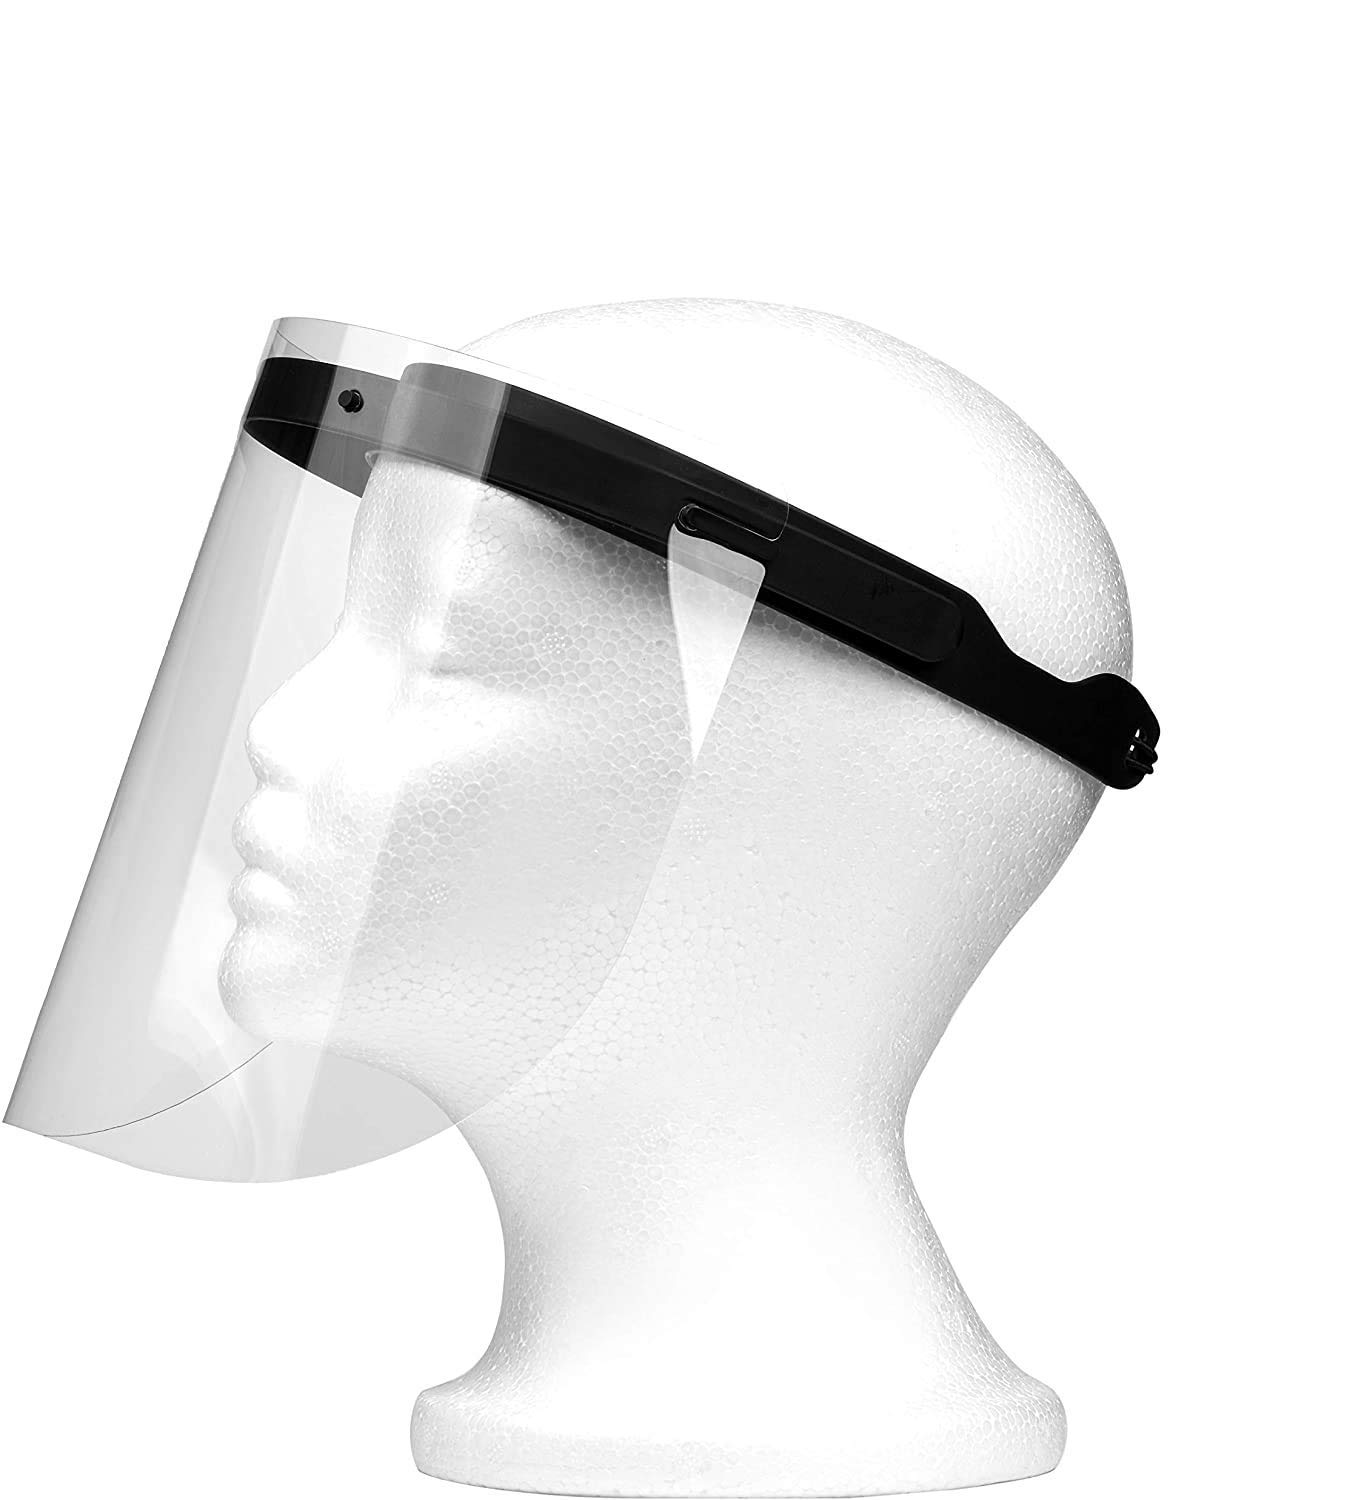 Urhome Gesichtsschutz verstellbar 5X Rahmen mit 25 x Wechselfolie - Gesichtsvisier zum Schutz vor Flüssigkeiten - Aufklappbar Schutzvisier wiederverwendbar Face Shield Visier